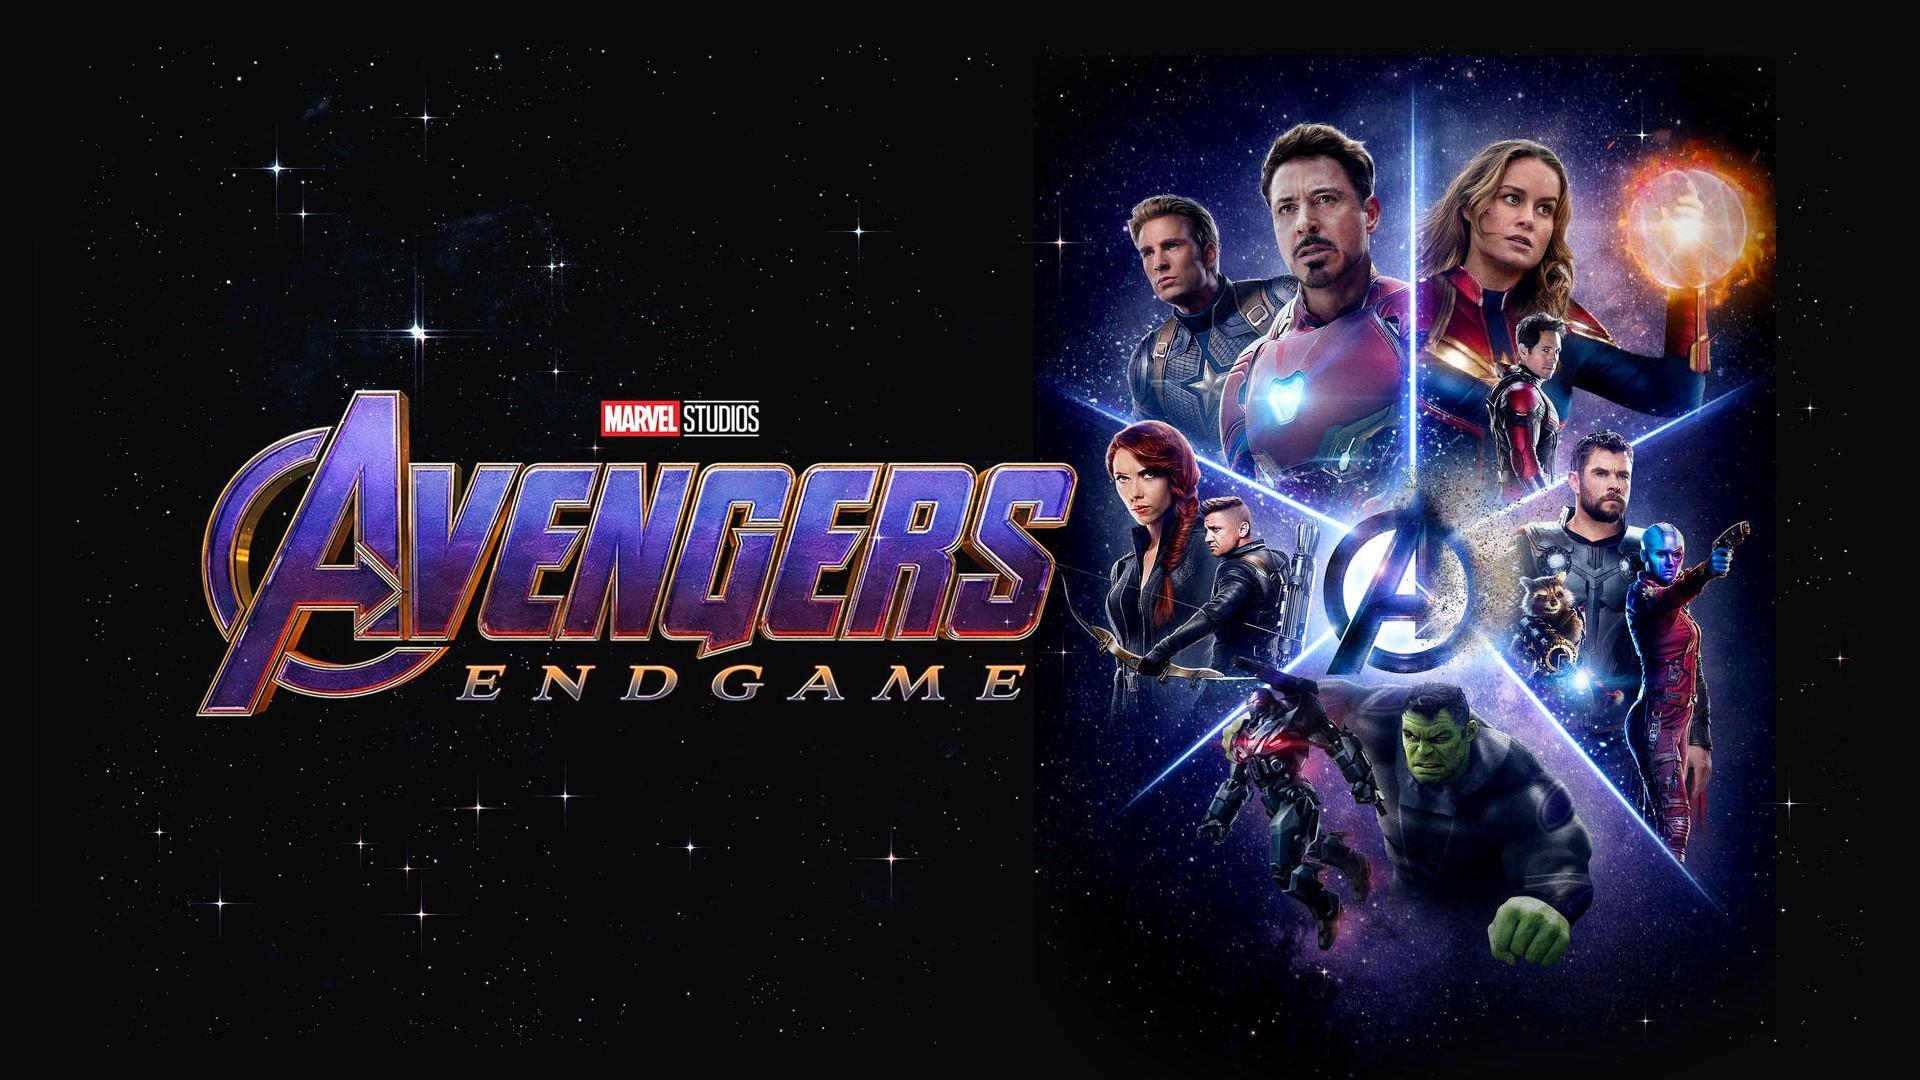 Avengers Endgame 2019 Background Movie Poster